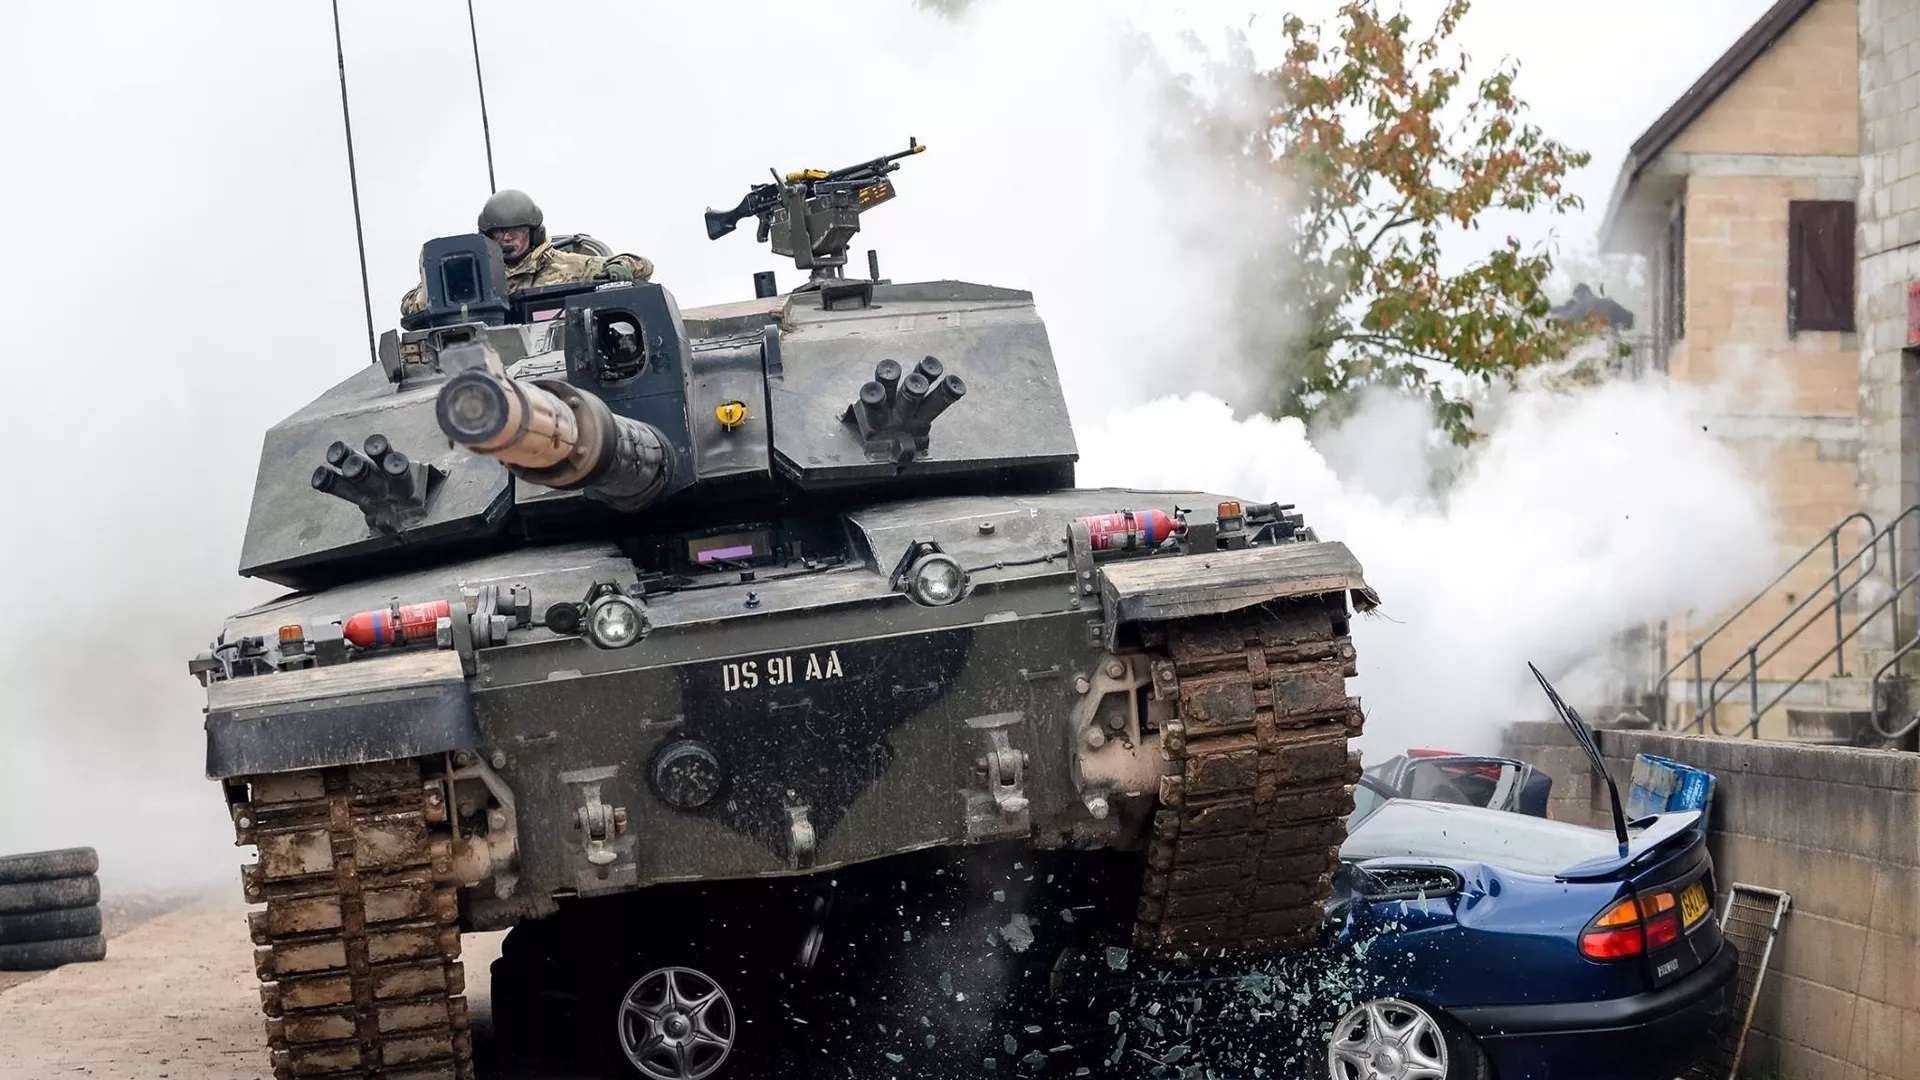 Chính trị gia Anh tuyên bố London sai lầm khi gửi xe tăng cho Ukraine - Ảnh 1.